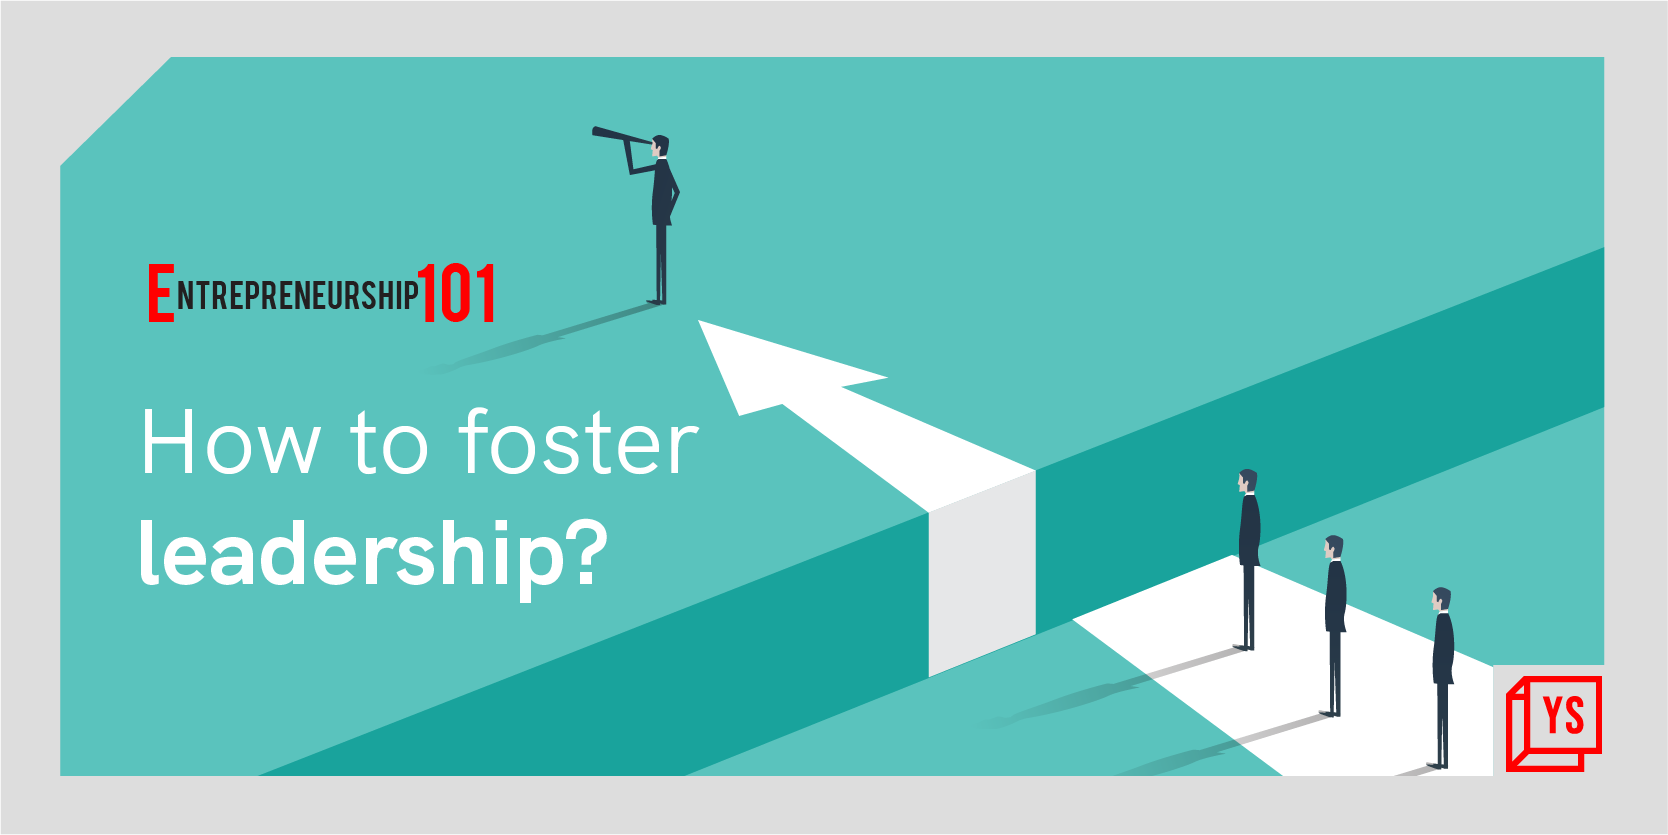 Entrepreneurship 101: How to foster leadership?